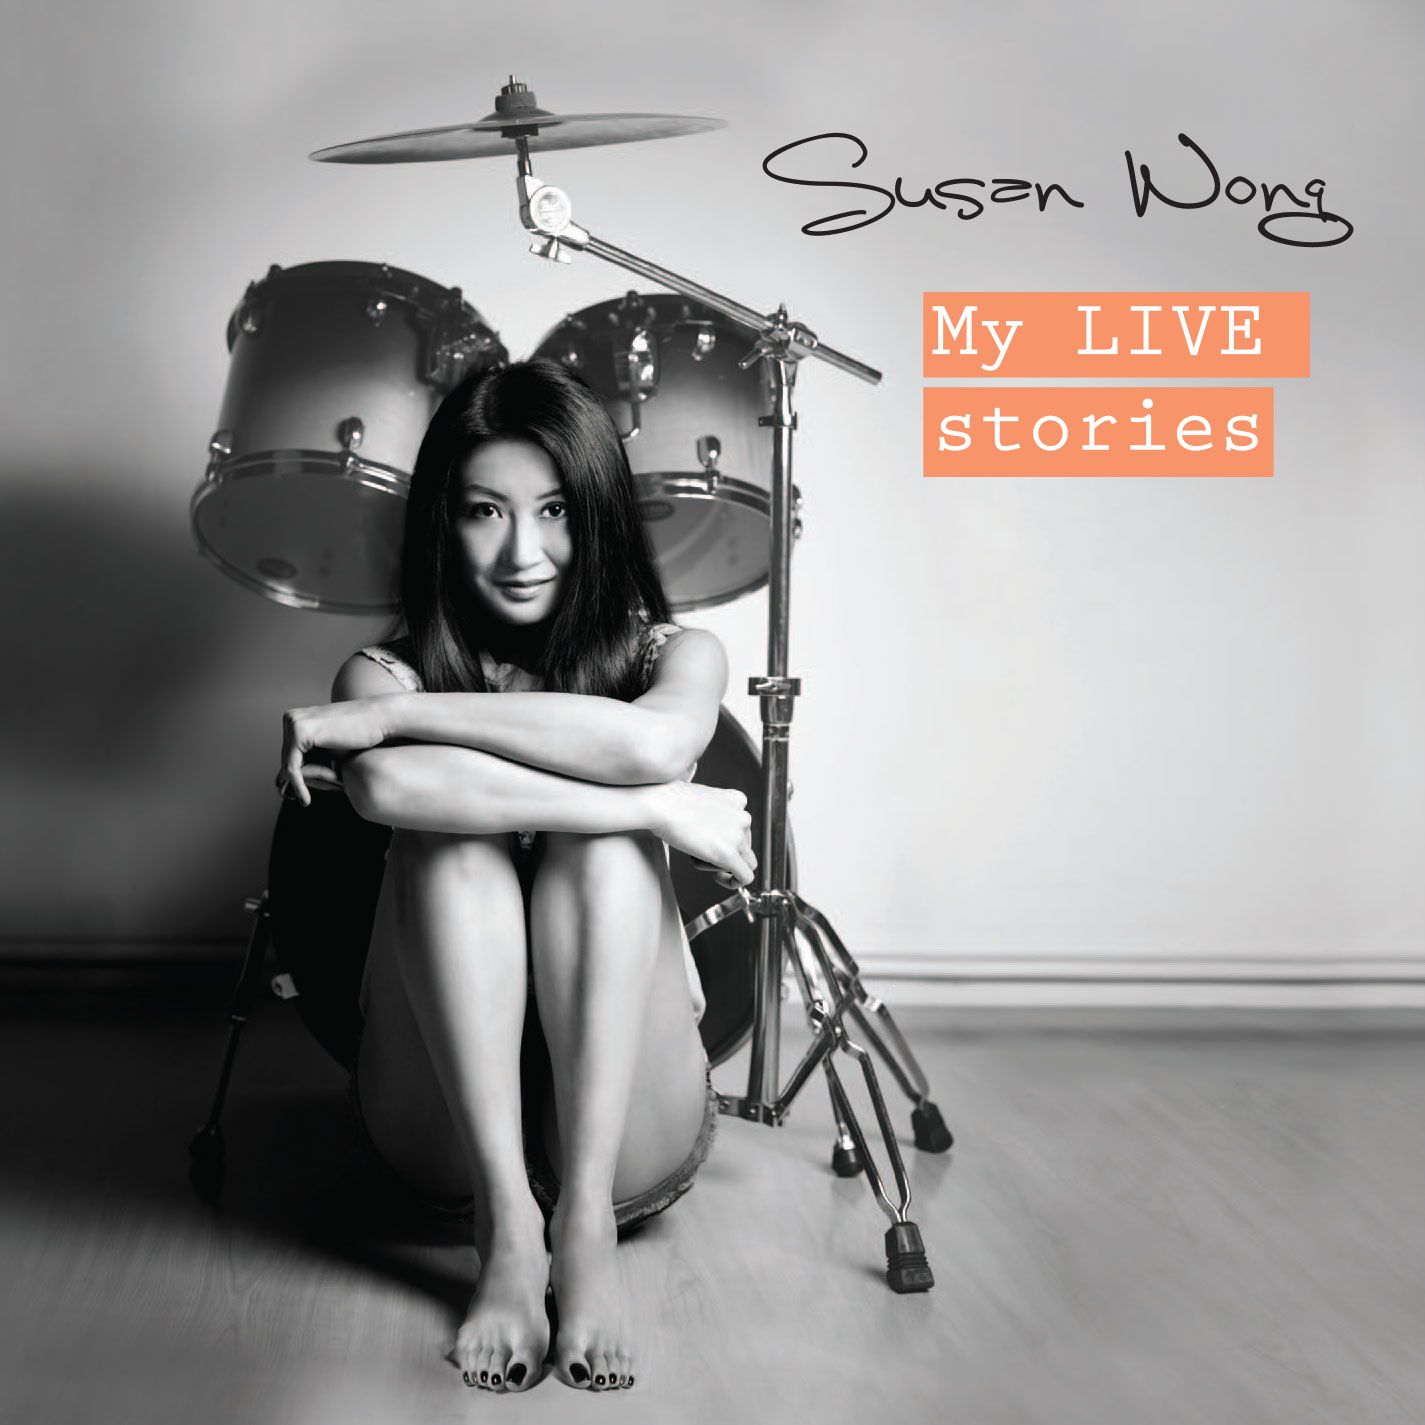 Susan Wong Album Reviews